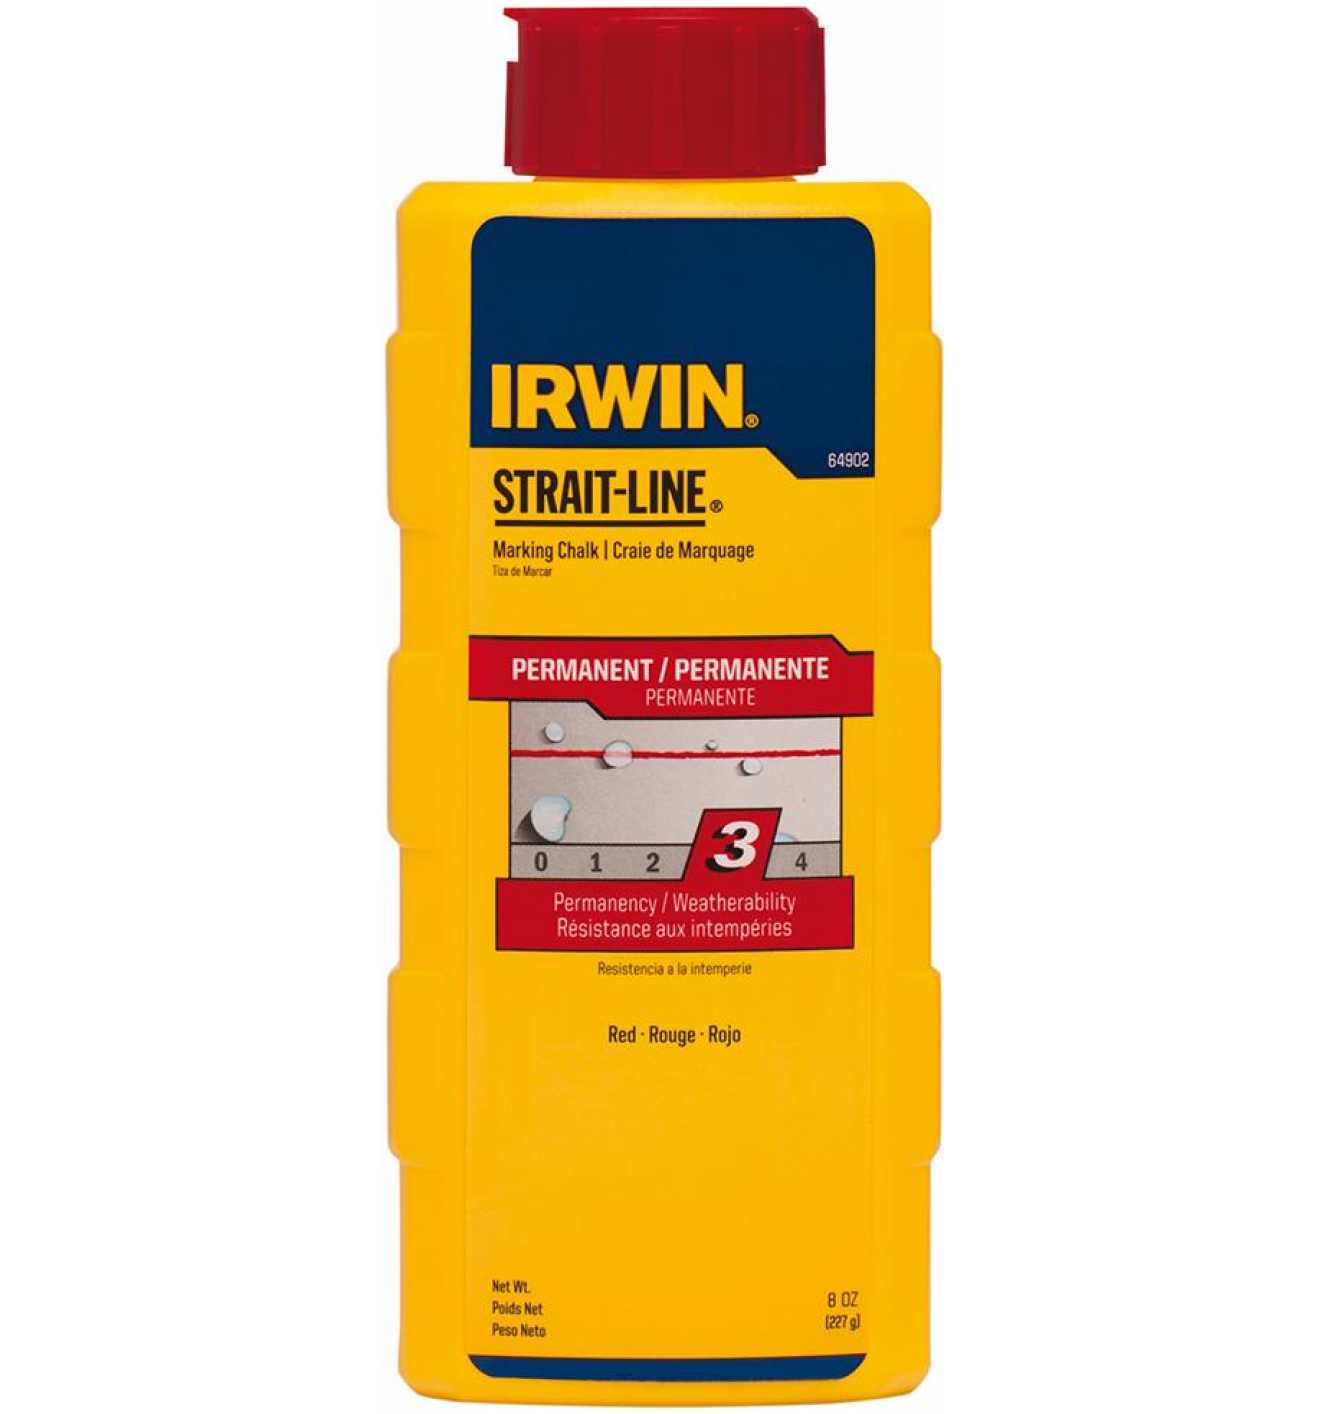 Irwin Schlagschnurkreide STRAIT-LINE 227 g rot